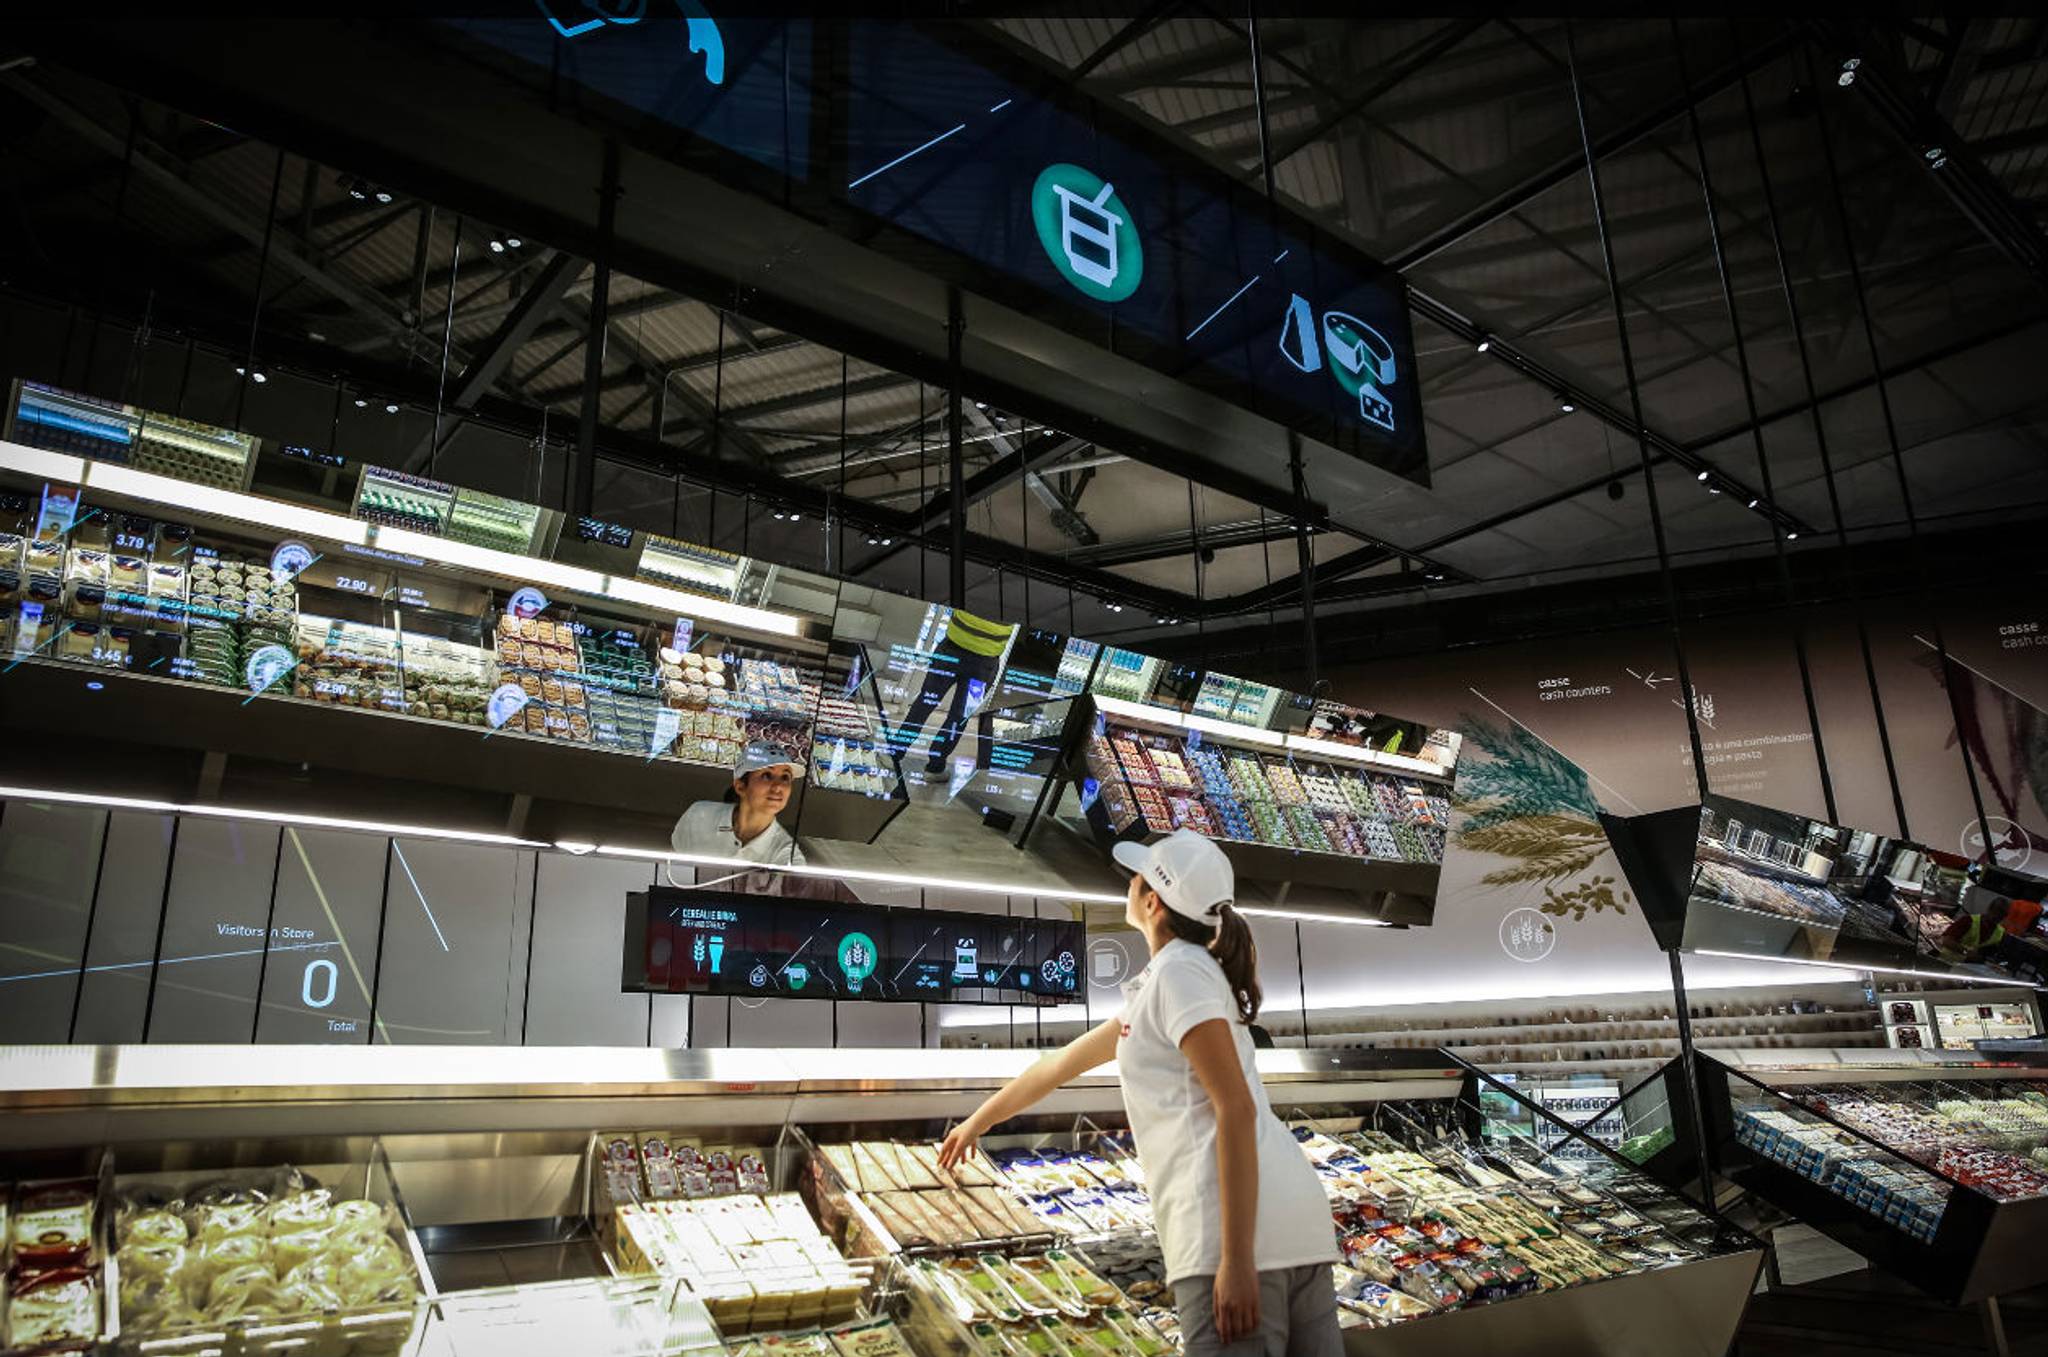 Coop Italia: the supermarket of the future